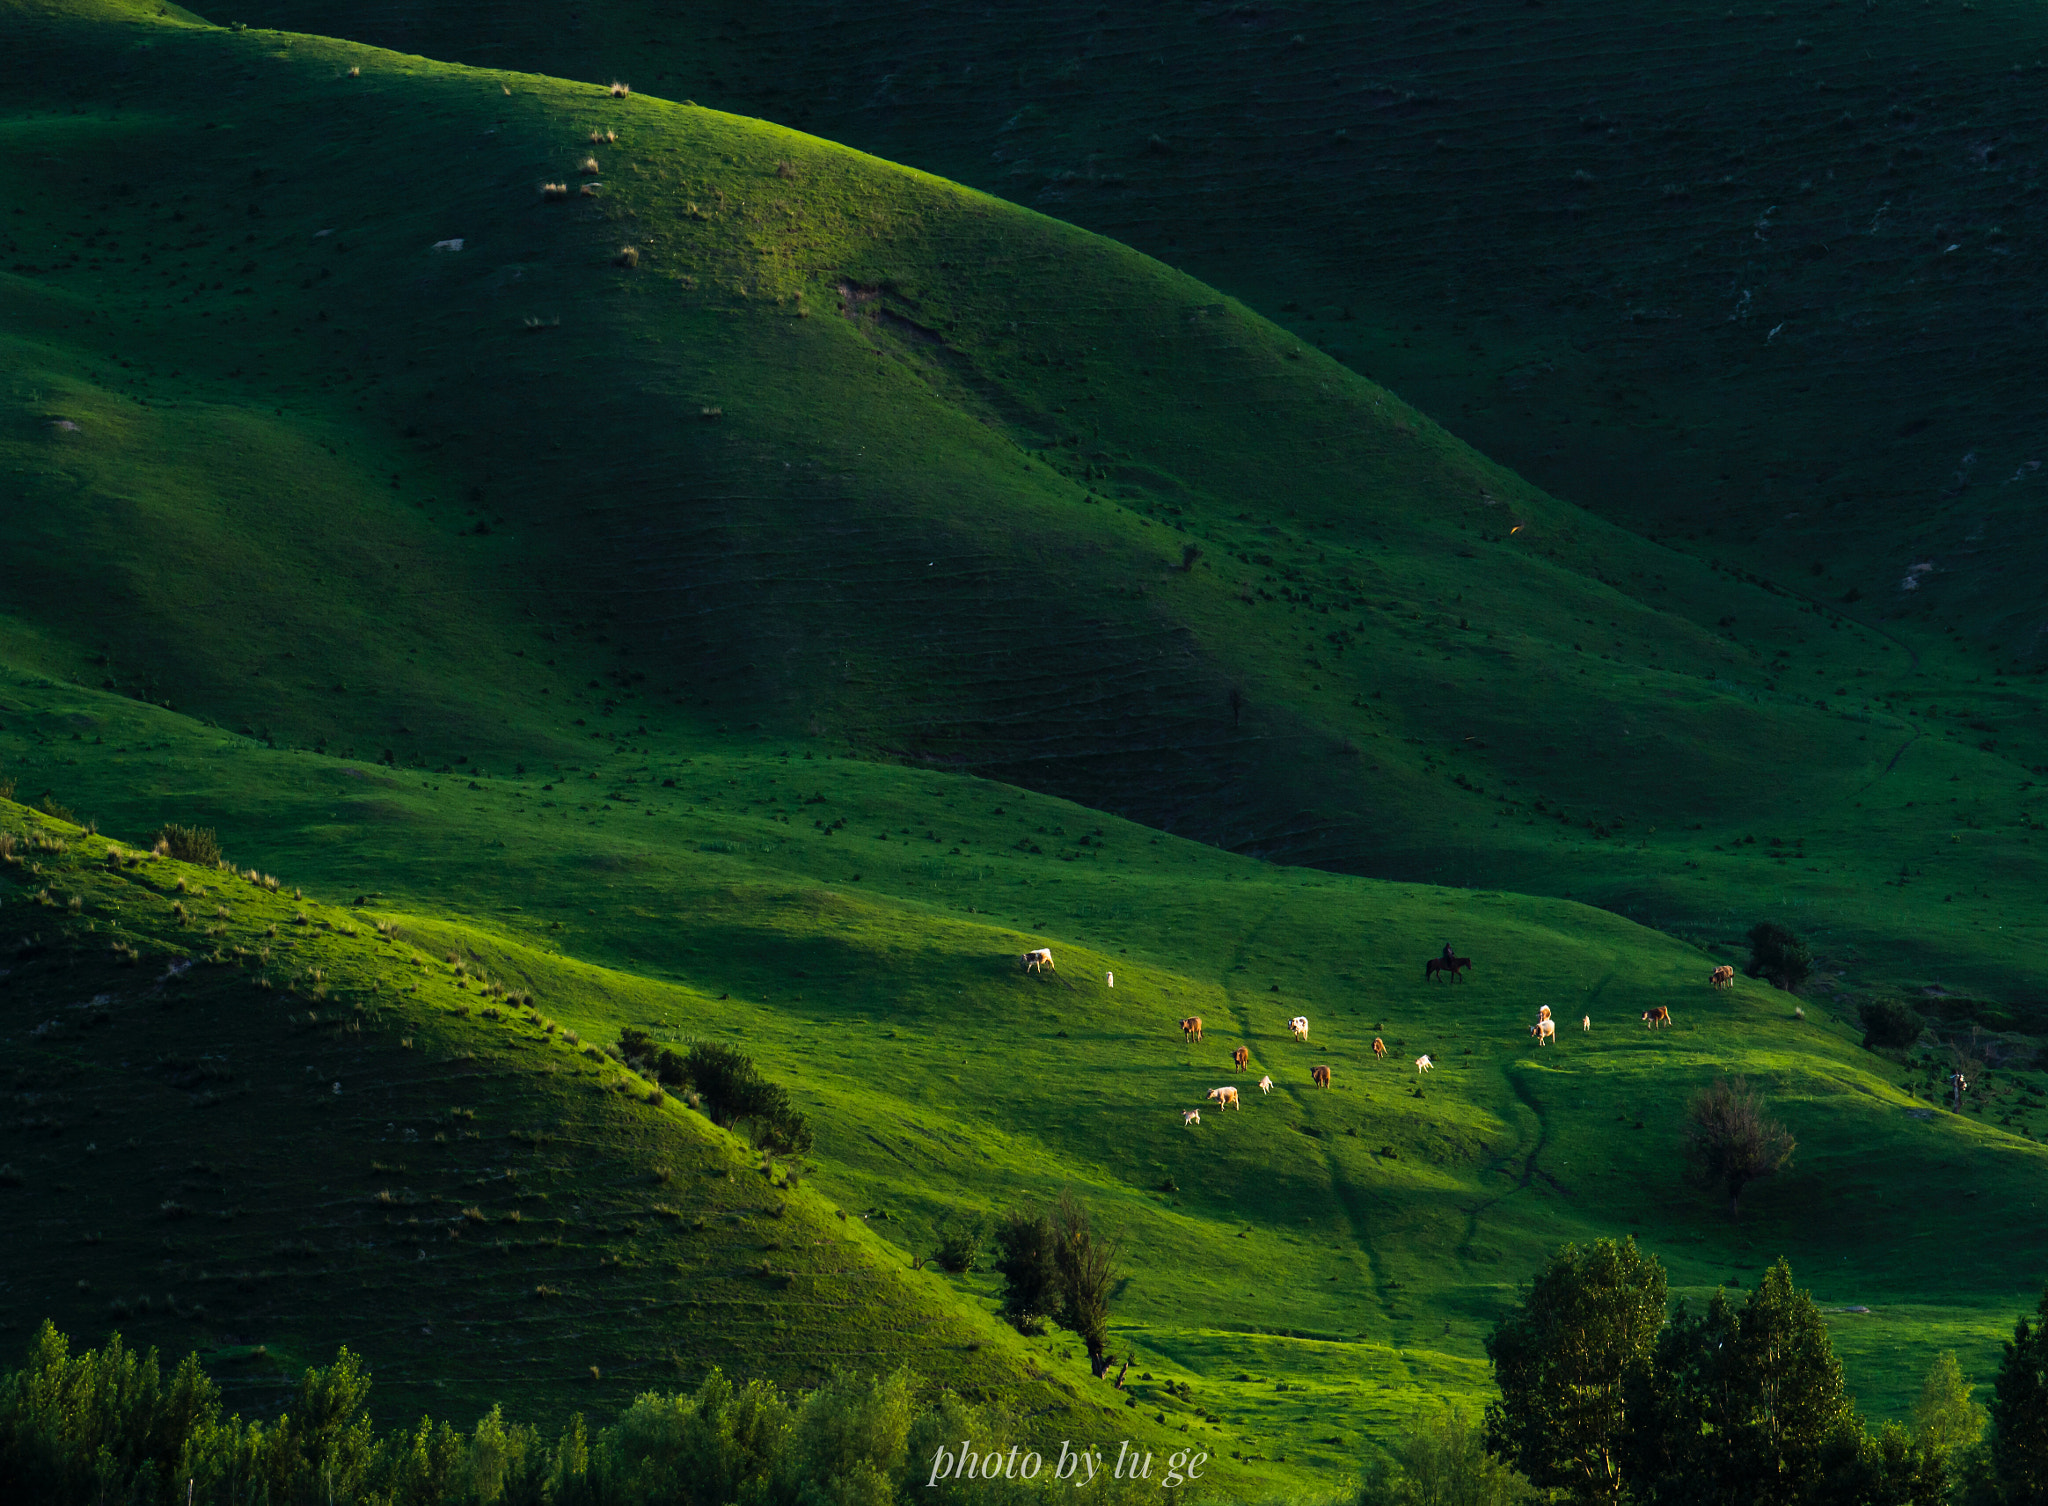 Nikon D7200 sample photo. Nalat grassland,xingjiang uygur autonomous region photography